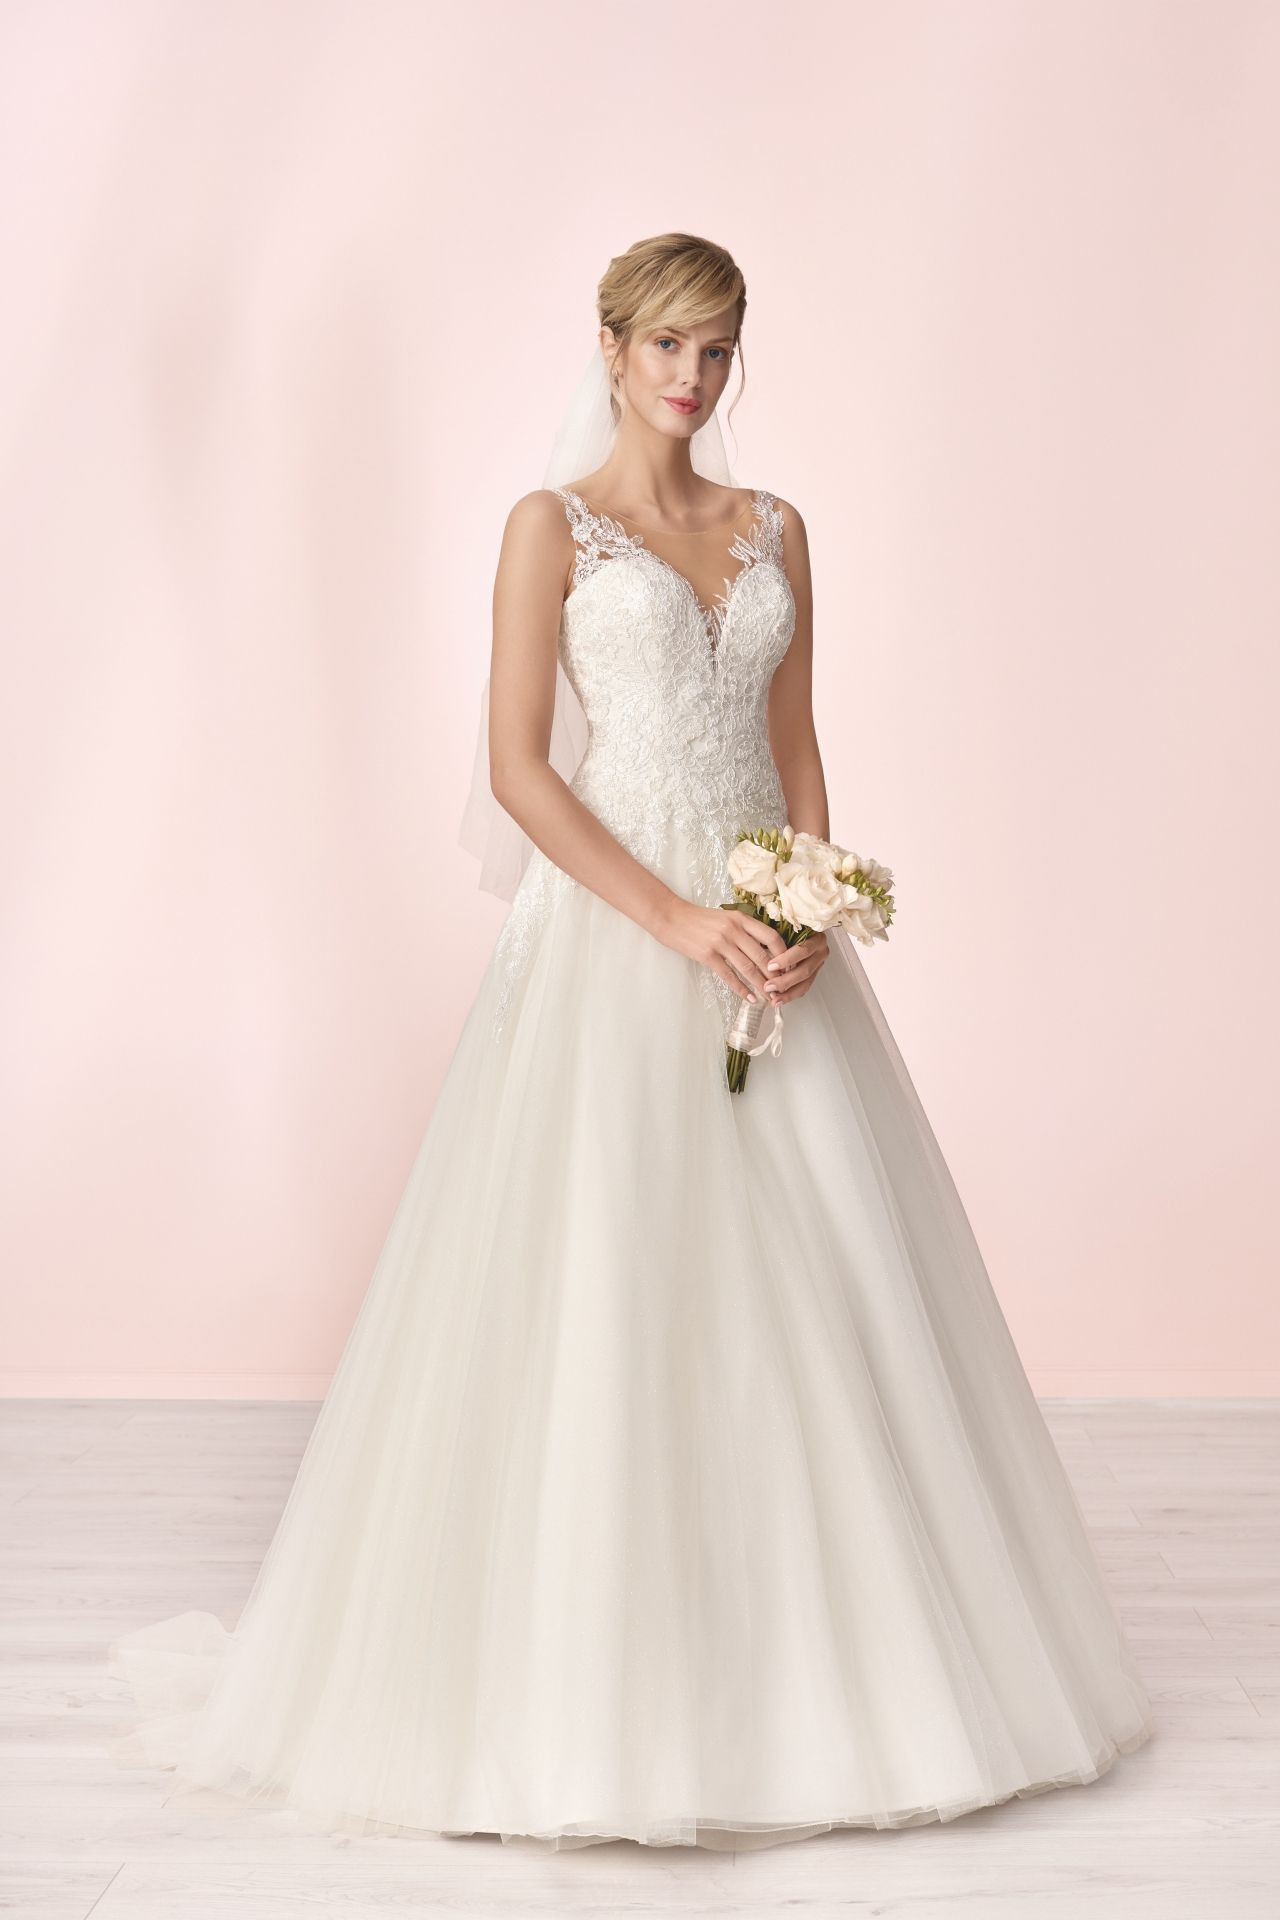 Elizabeth Passion 2019  Kleid Hochzeit Hochzeitskleid